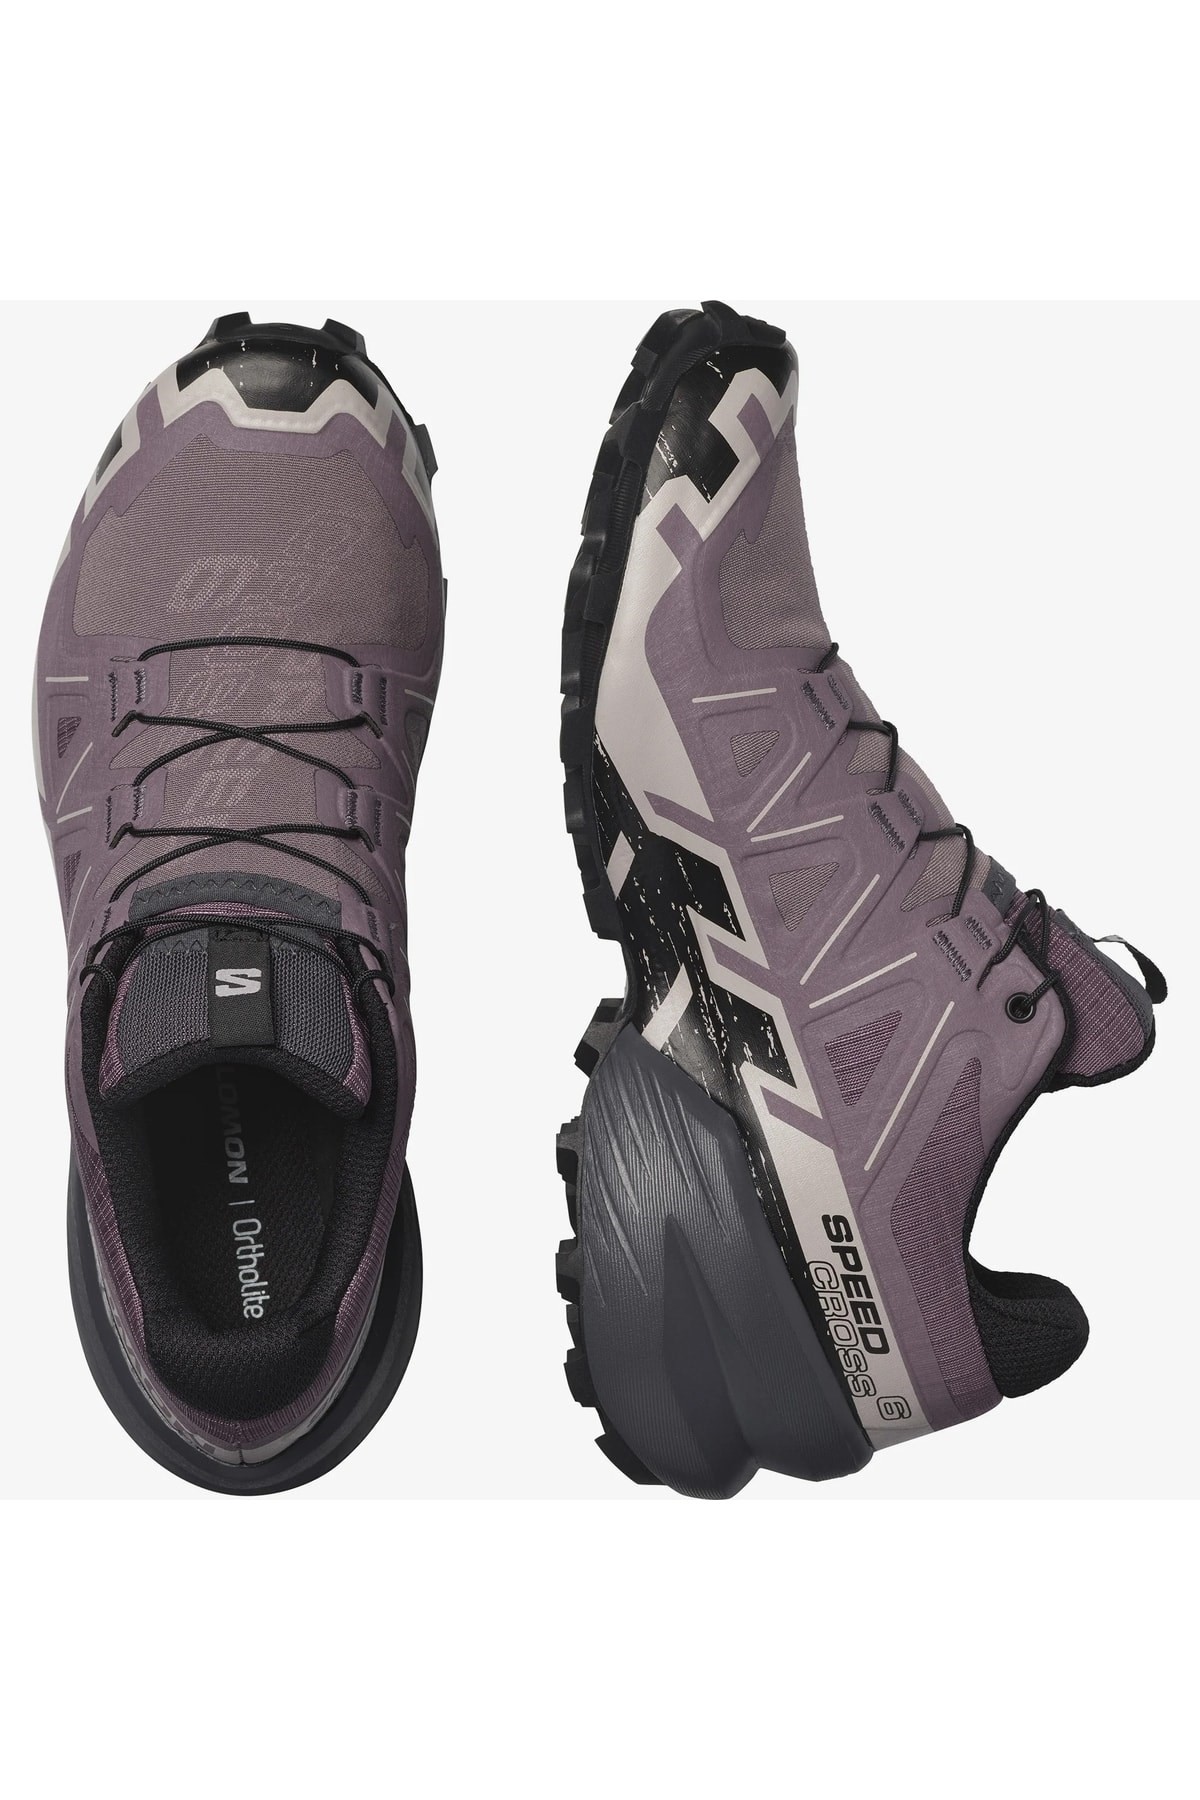 Salomon Speedcross 6 W Kadın Patika Koşu Ayakkabısı L41742900